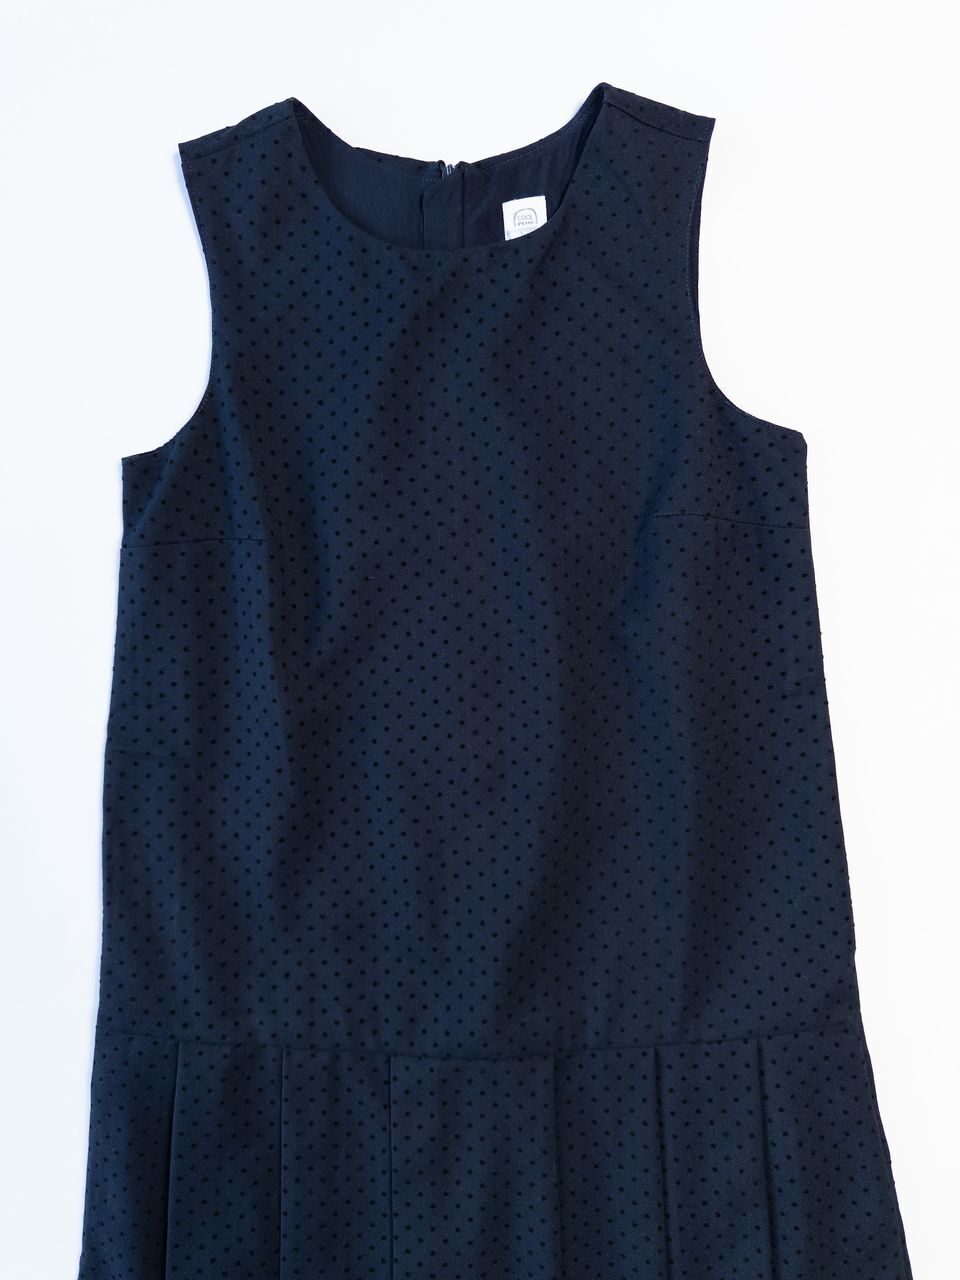 Платье из костюмной ткани на подкладке сзади на молнии цвет темно-синий/горошек на рост 152 см Cool club